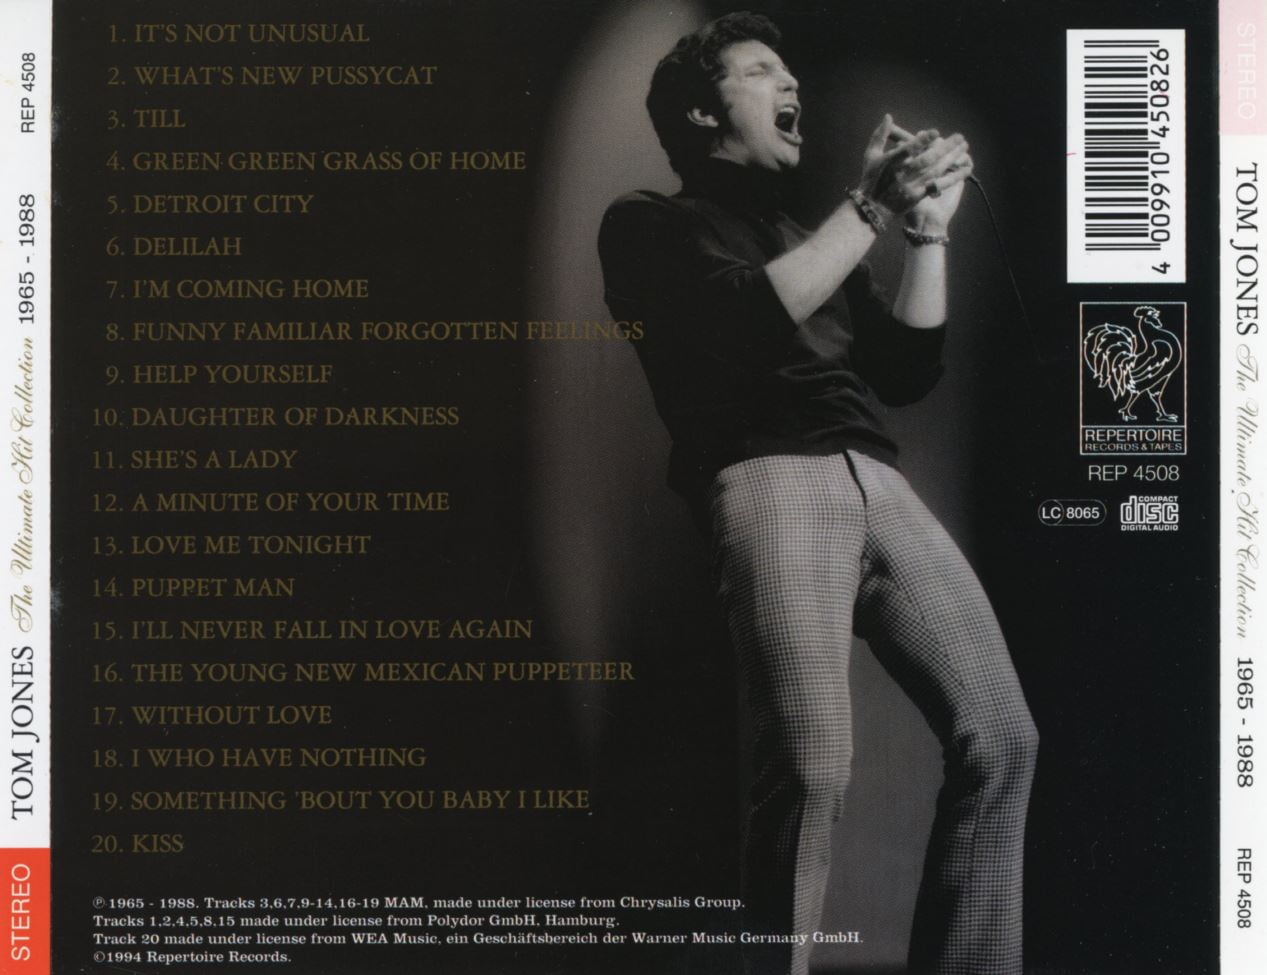 톰 존스 - Tom Jones - The Ultimate Hit Collection 1965 - 1988 [독일발매]